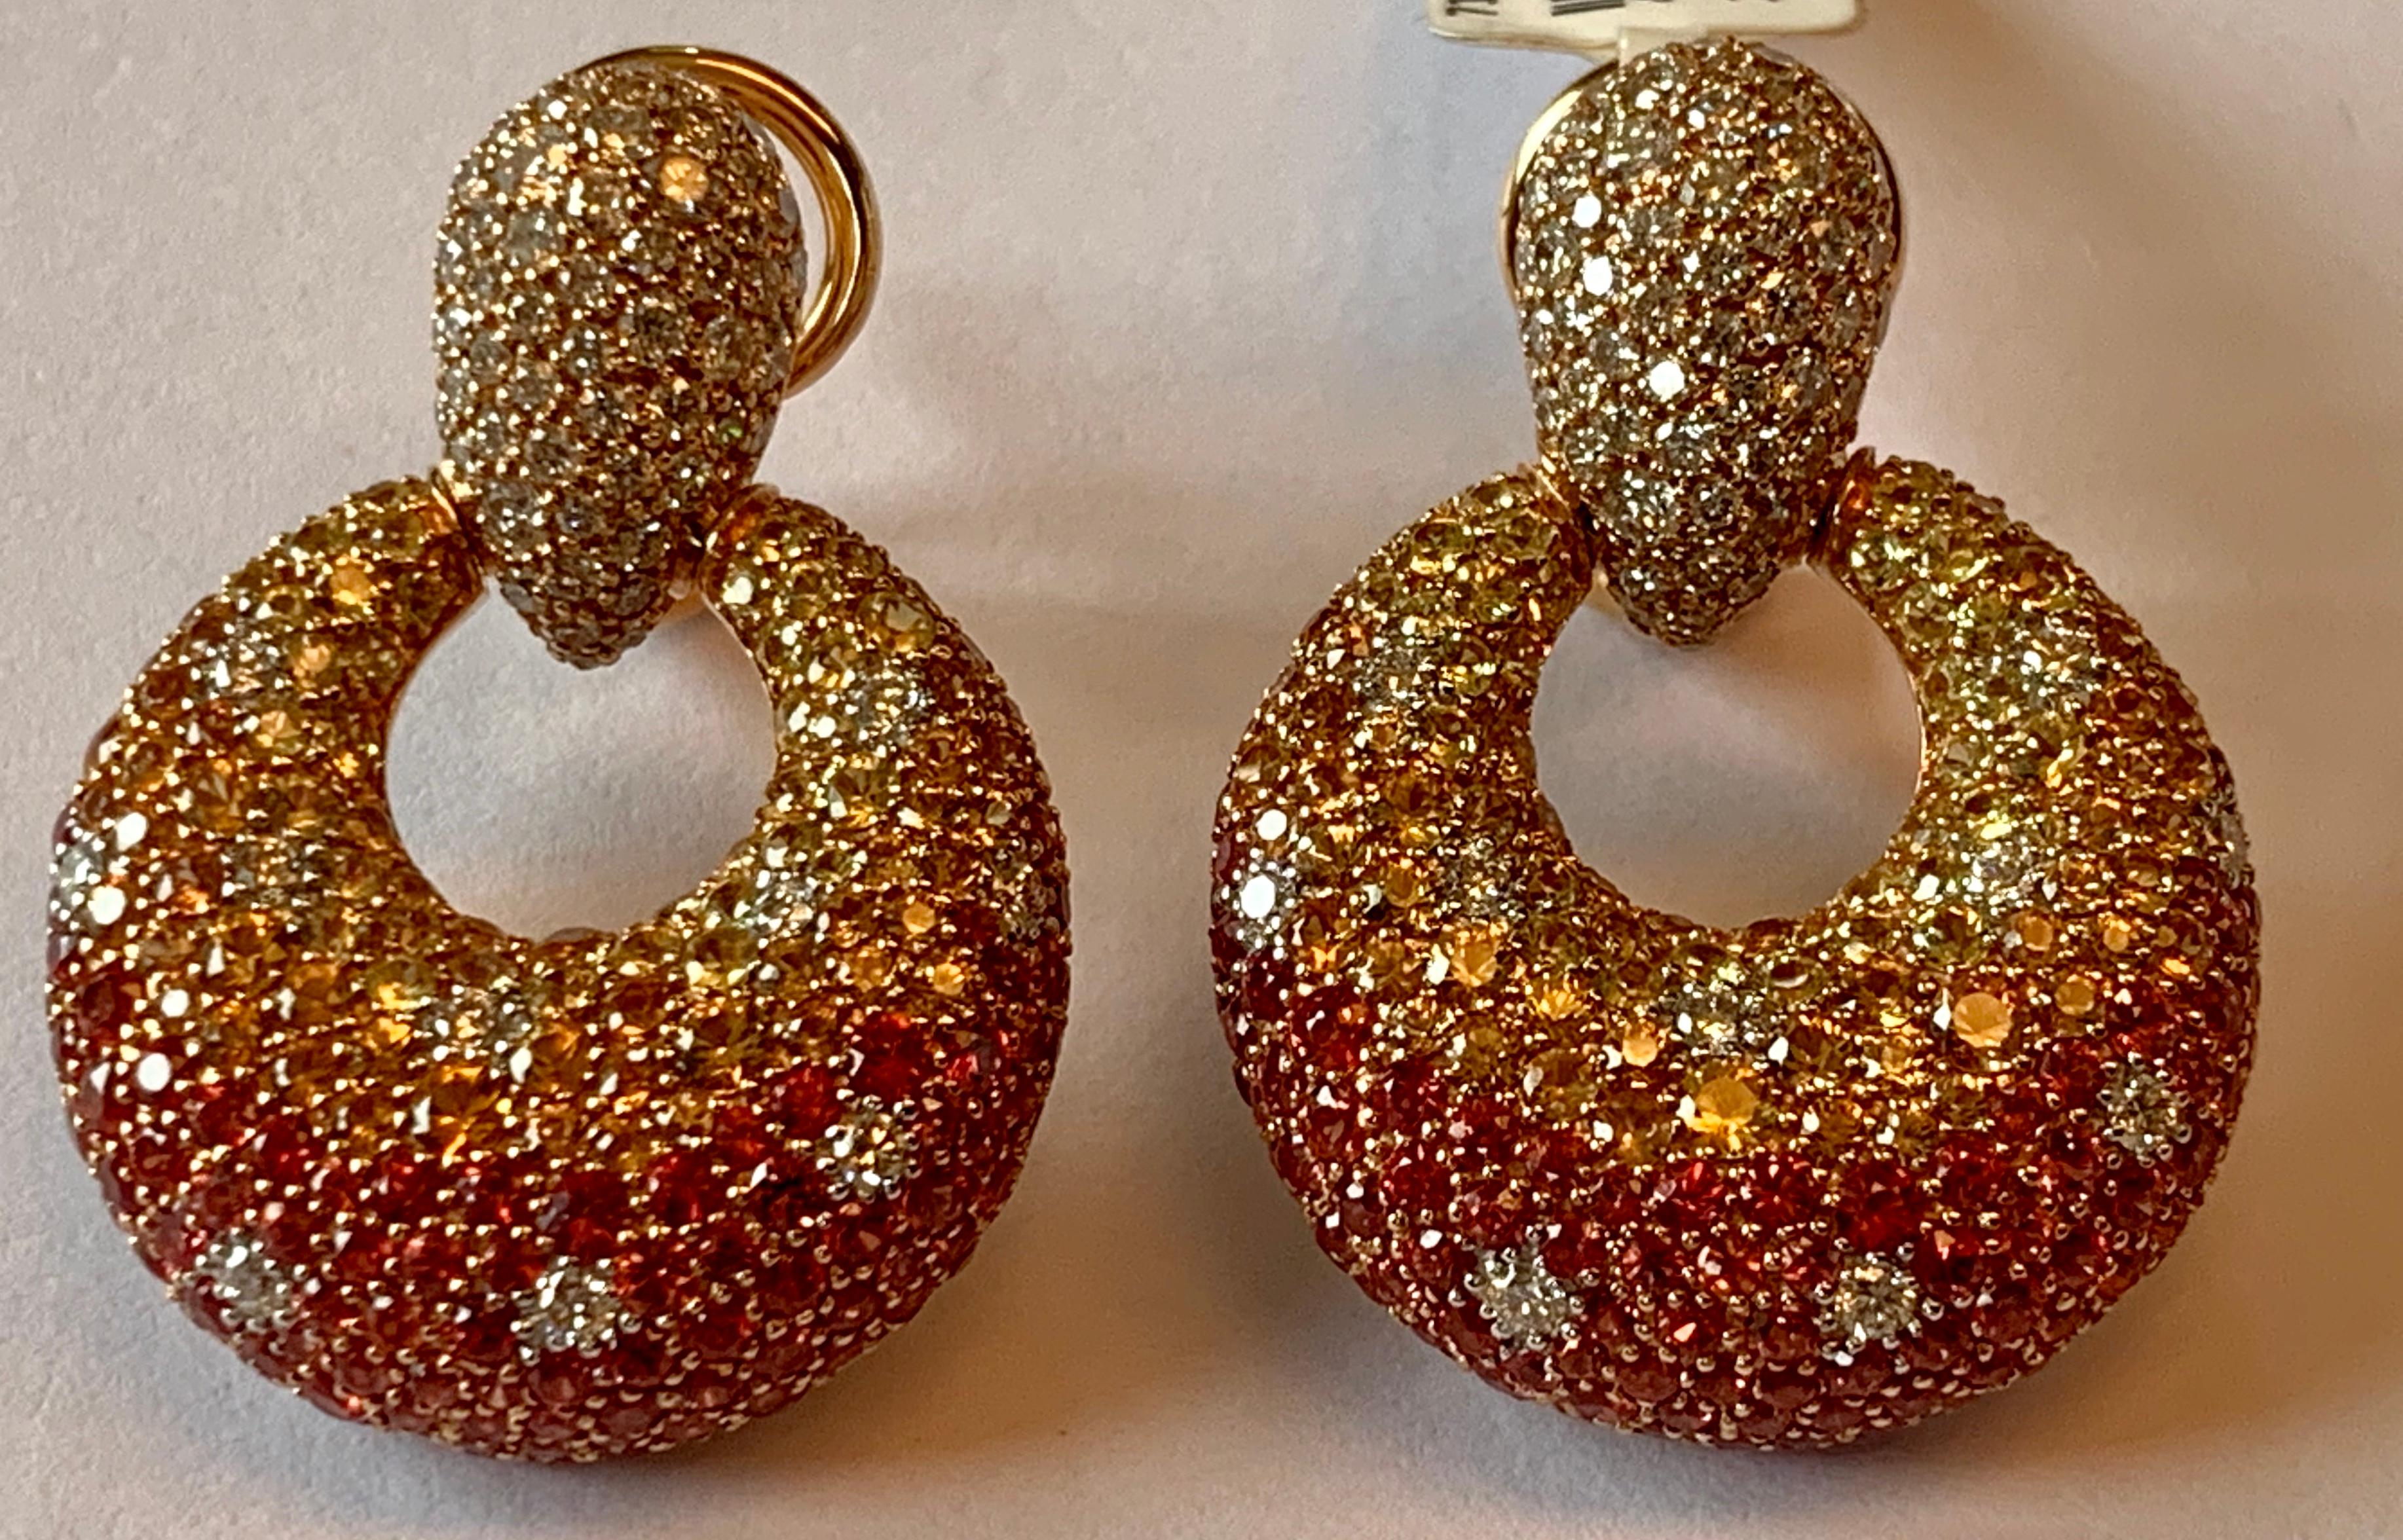 Wunderschöne Ohrringe aus 18 K Roségold mit 415 gepflasterten gelben und orangefarbenen Saphiren mit einem Gewicht von 7,82 ct und 142 gepflasterten Diamanten im Brillantschliff mit einem Gewicht von 1,78 ct, Farbe G, Klarheit vs. 
Schöne